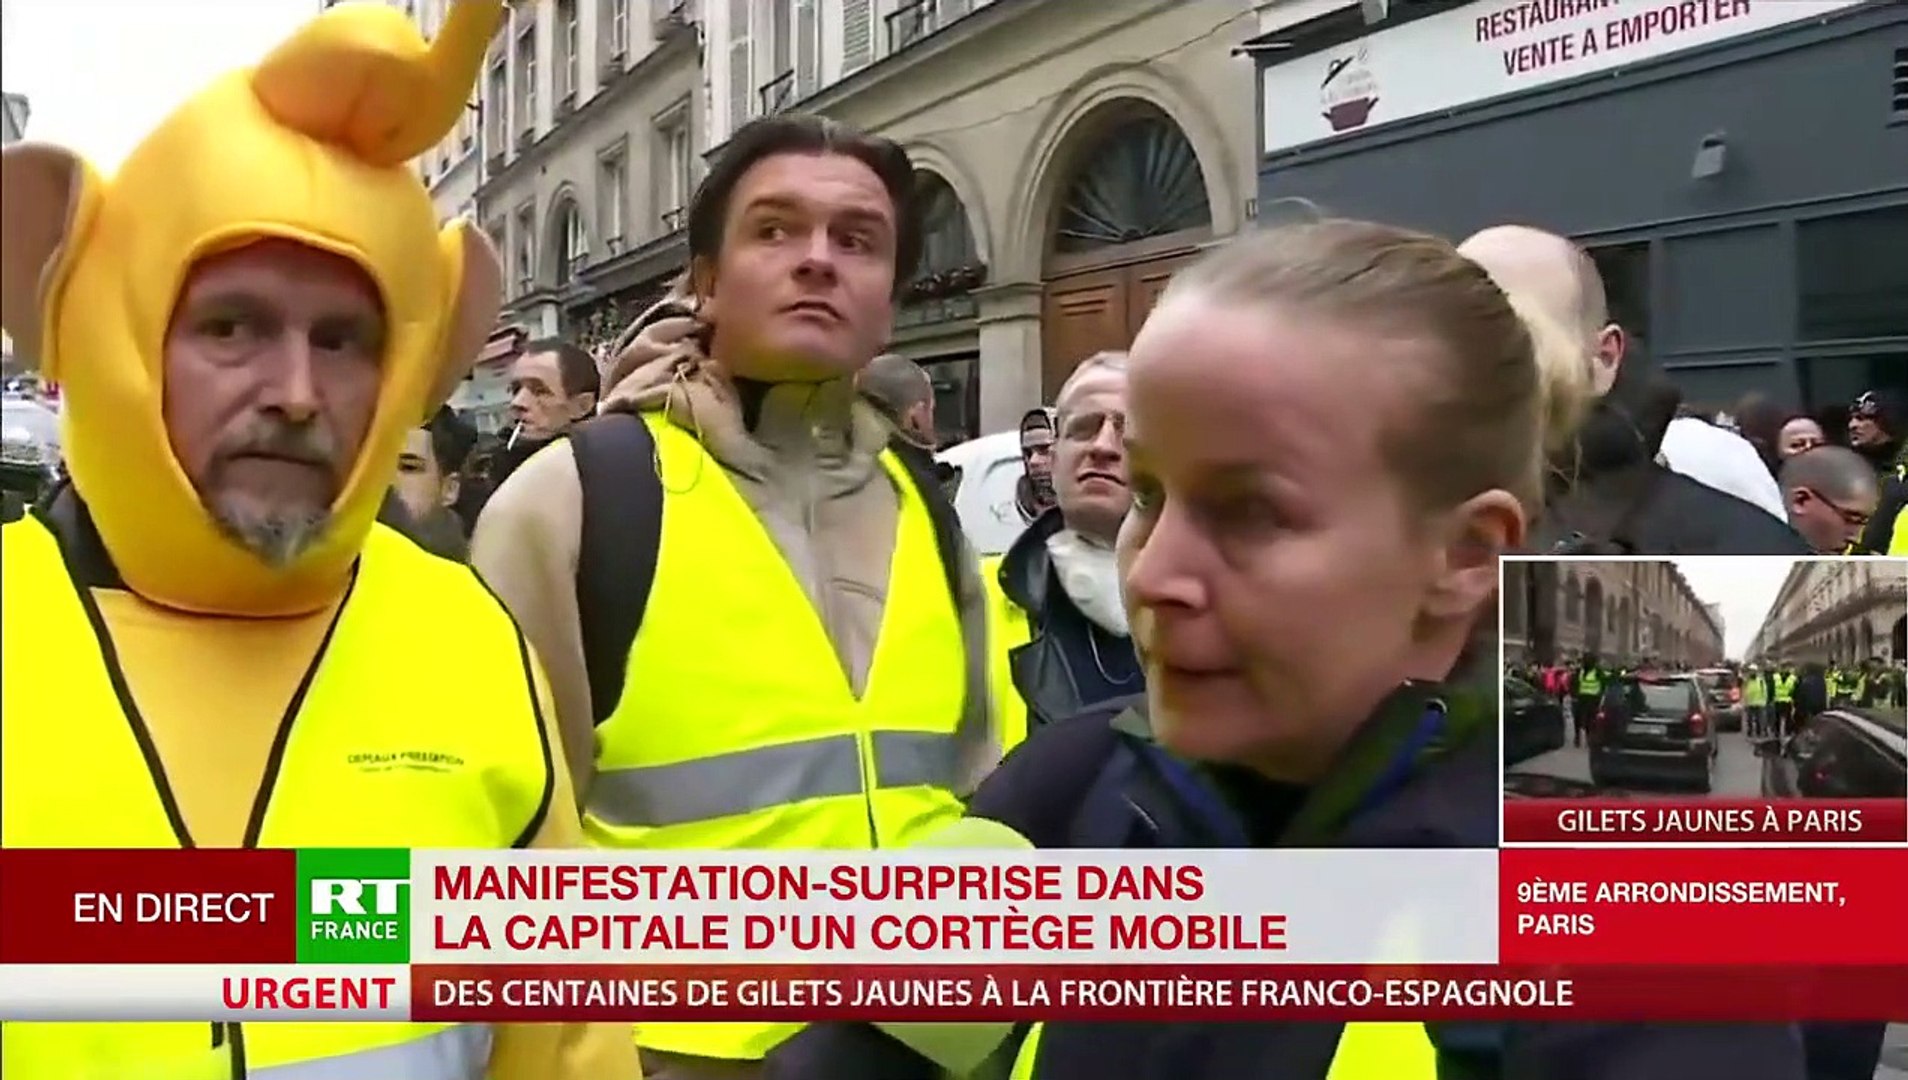 Gilets jaunes - "Brigitte Macron à poil sur un tas de palettes": La  secrétaire d'Etat Marlène Schiappa va saisir le CSA - La chaîne RT se  défend - VIDEO - Vidéo Dailymotion